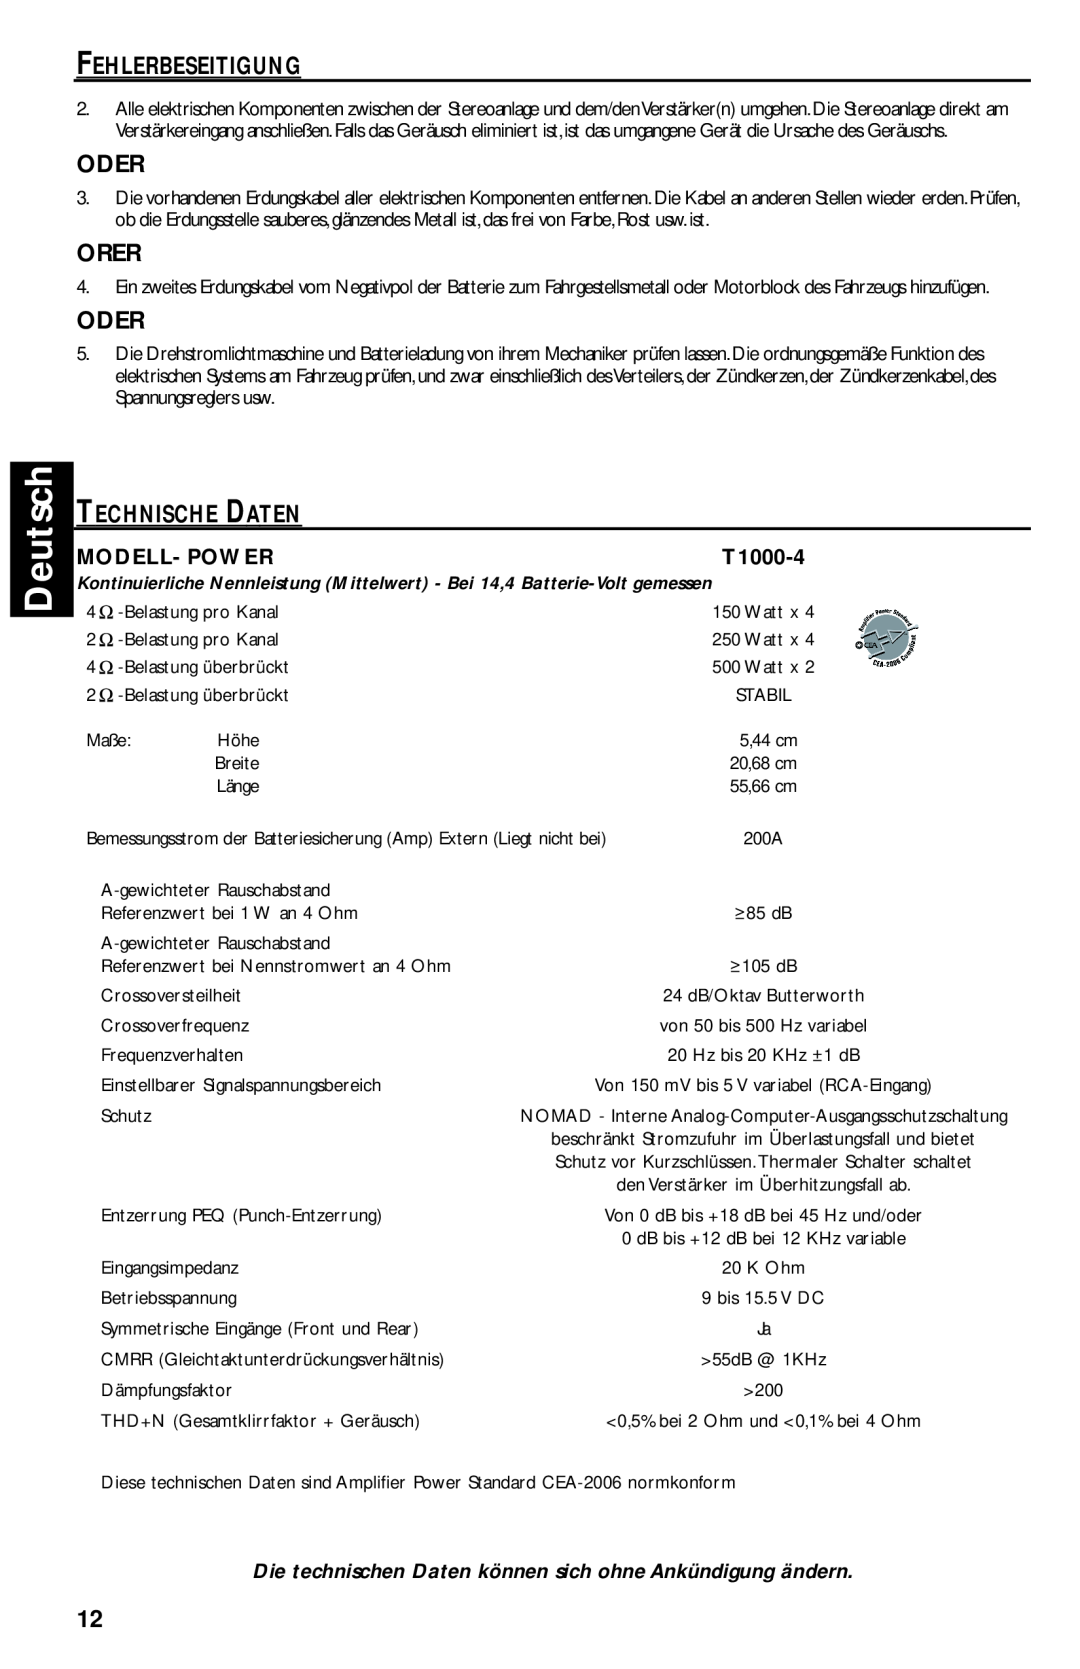 Rockford Fosgate T1000-4 manual Deutsch, Fehlerbeseitigung, Oder, Orer, Technische Daten, Modell- Power 